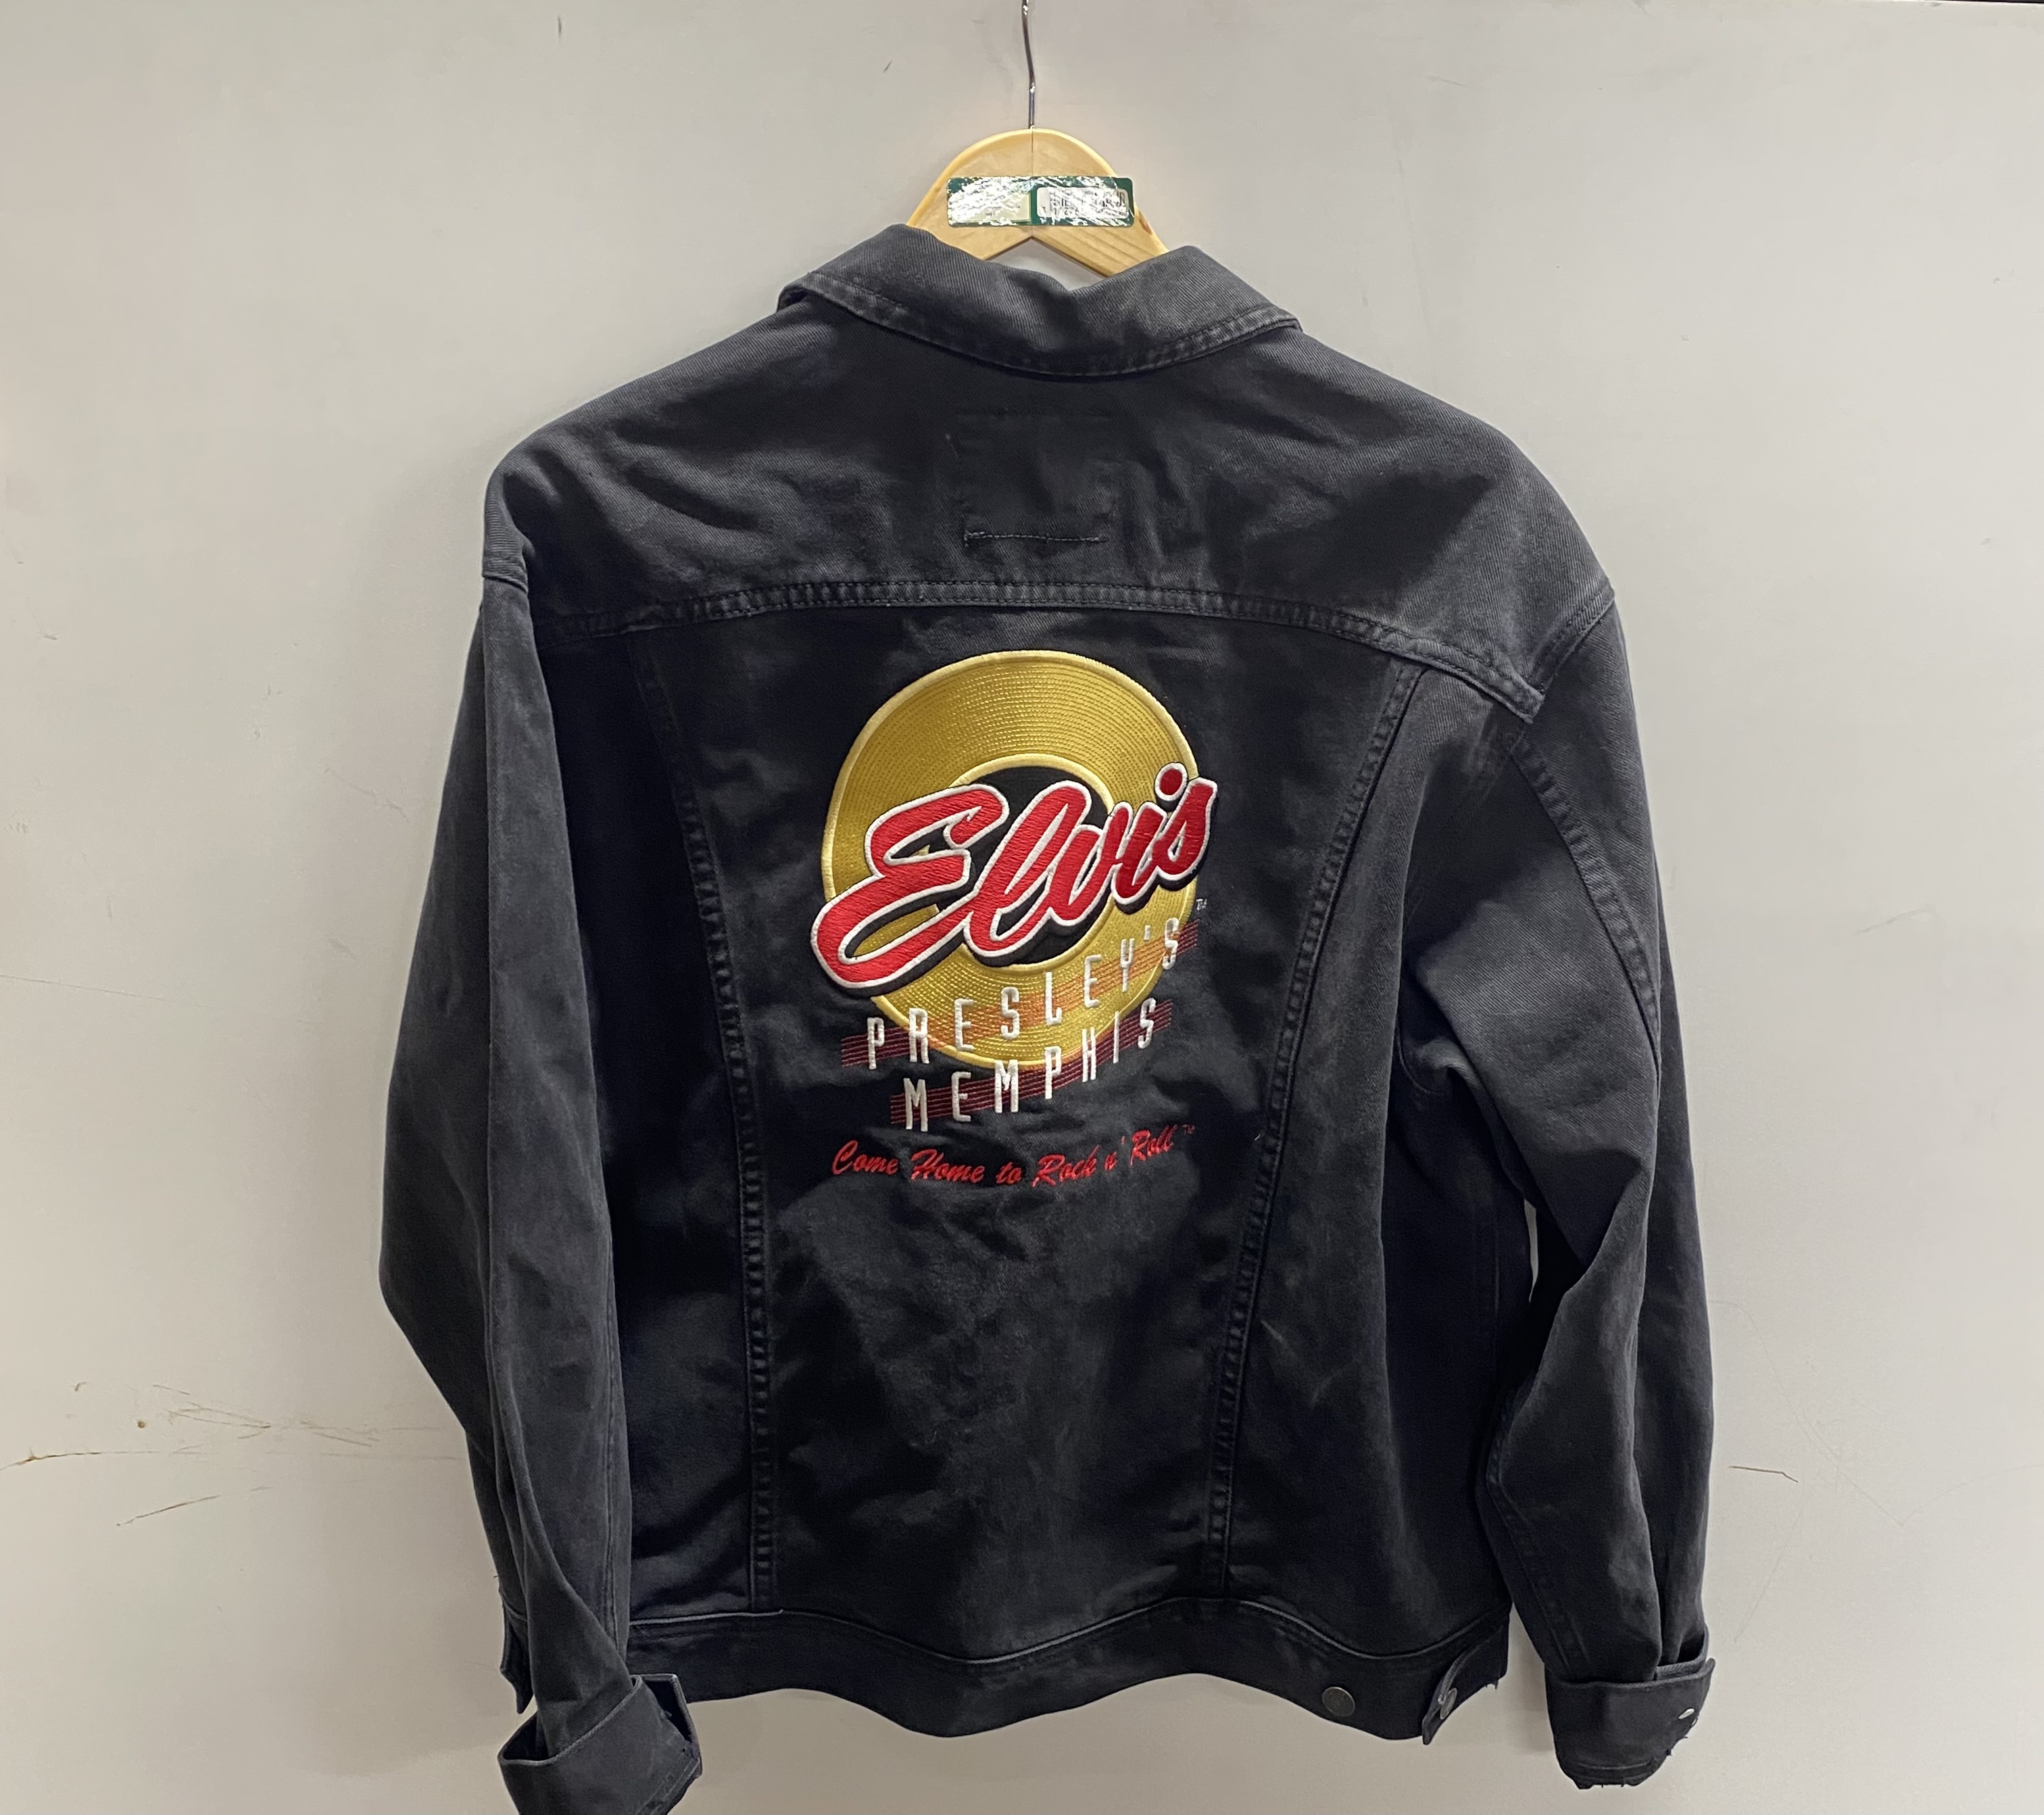 A Lee denim collection Graceland Elvis Presley concert jacket, size L. - Image 2 of 2